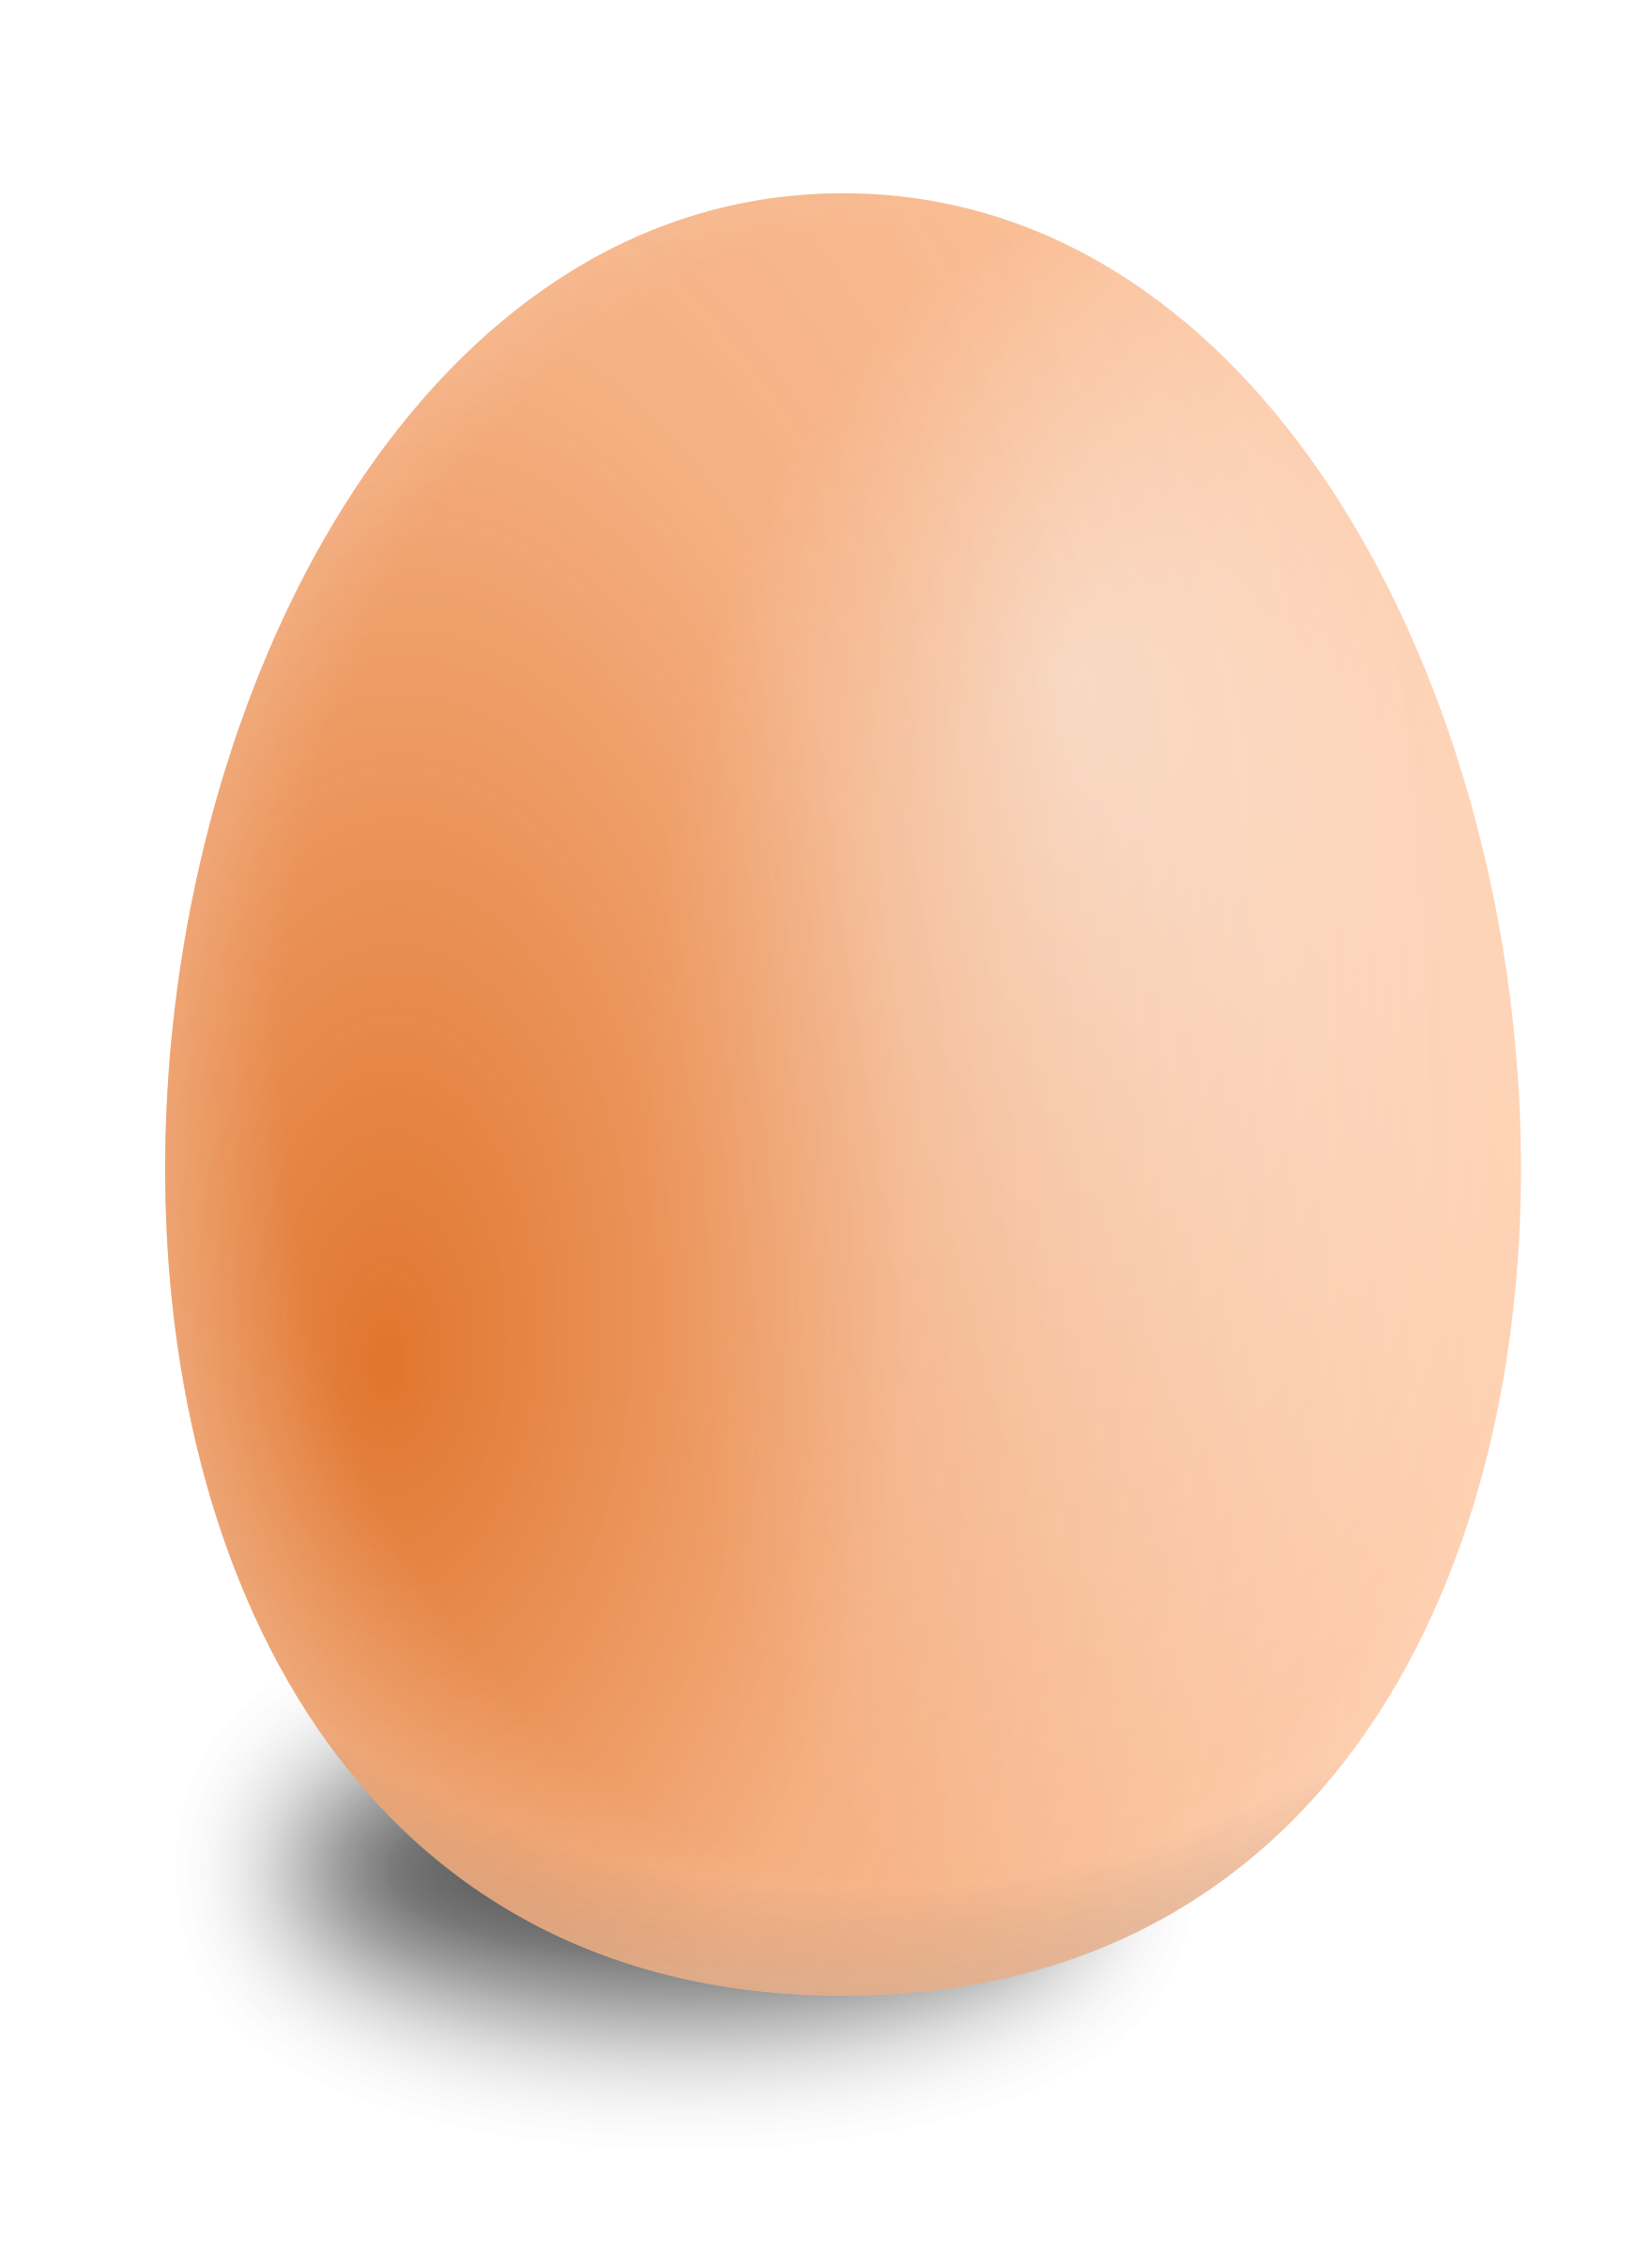 Free Egg Png Transparent, Download Free Egg Png Transparent png images